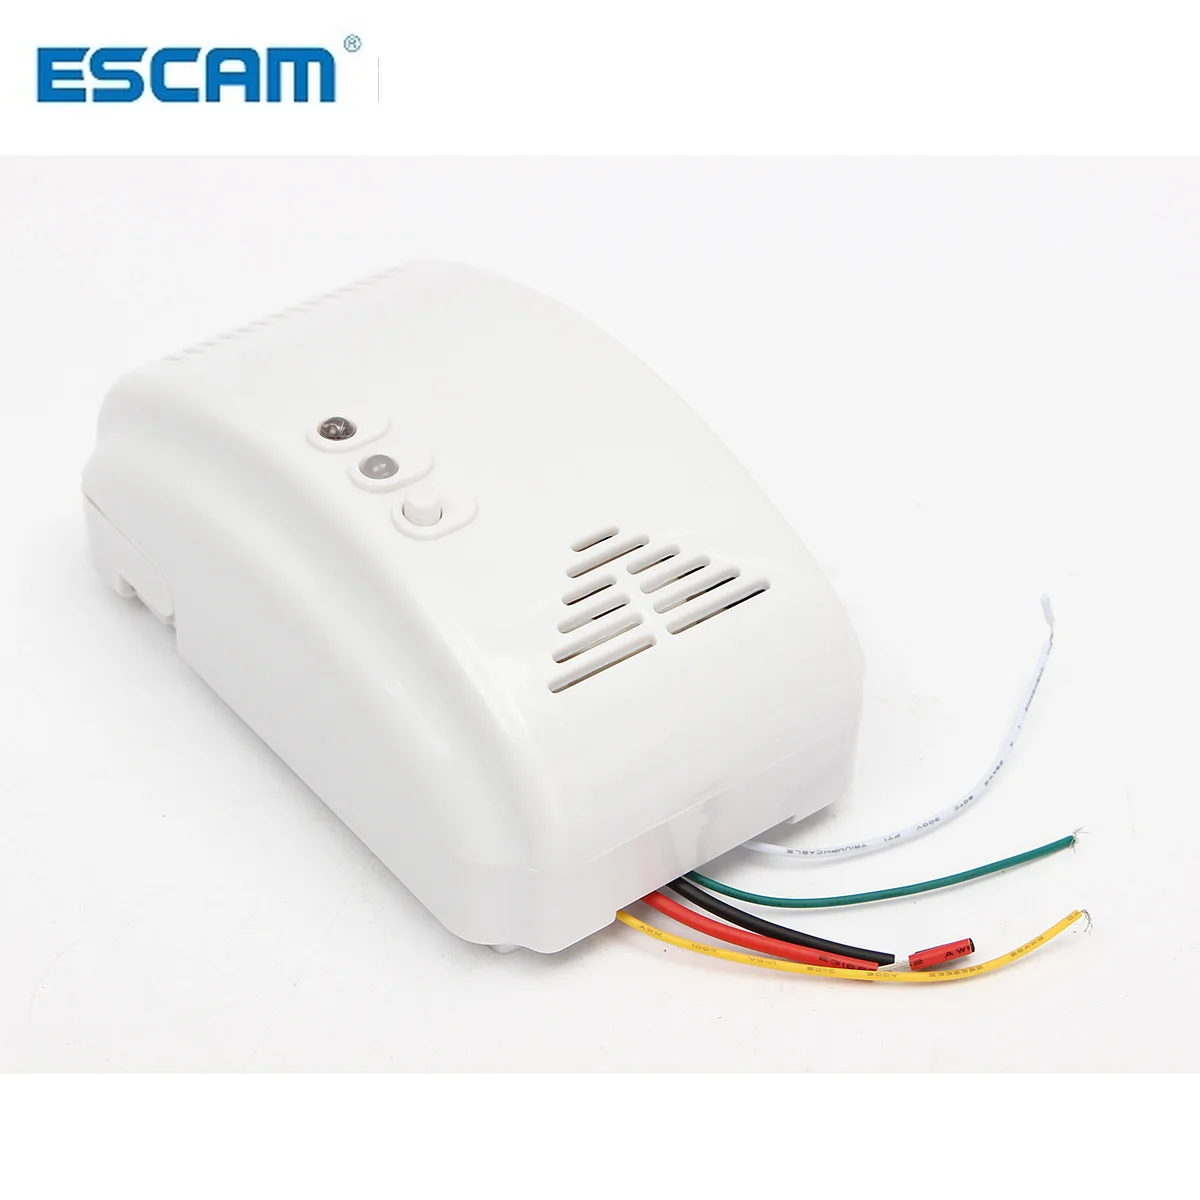 ESCAM 12V Gas Detector Sensor Alarm Propane Butane LPG Natural Motorhome For Home Alarm System Security